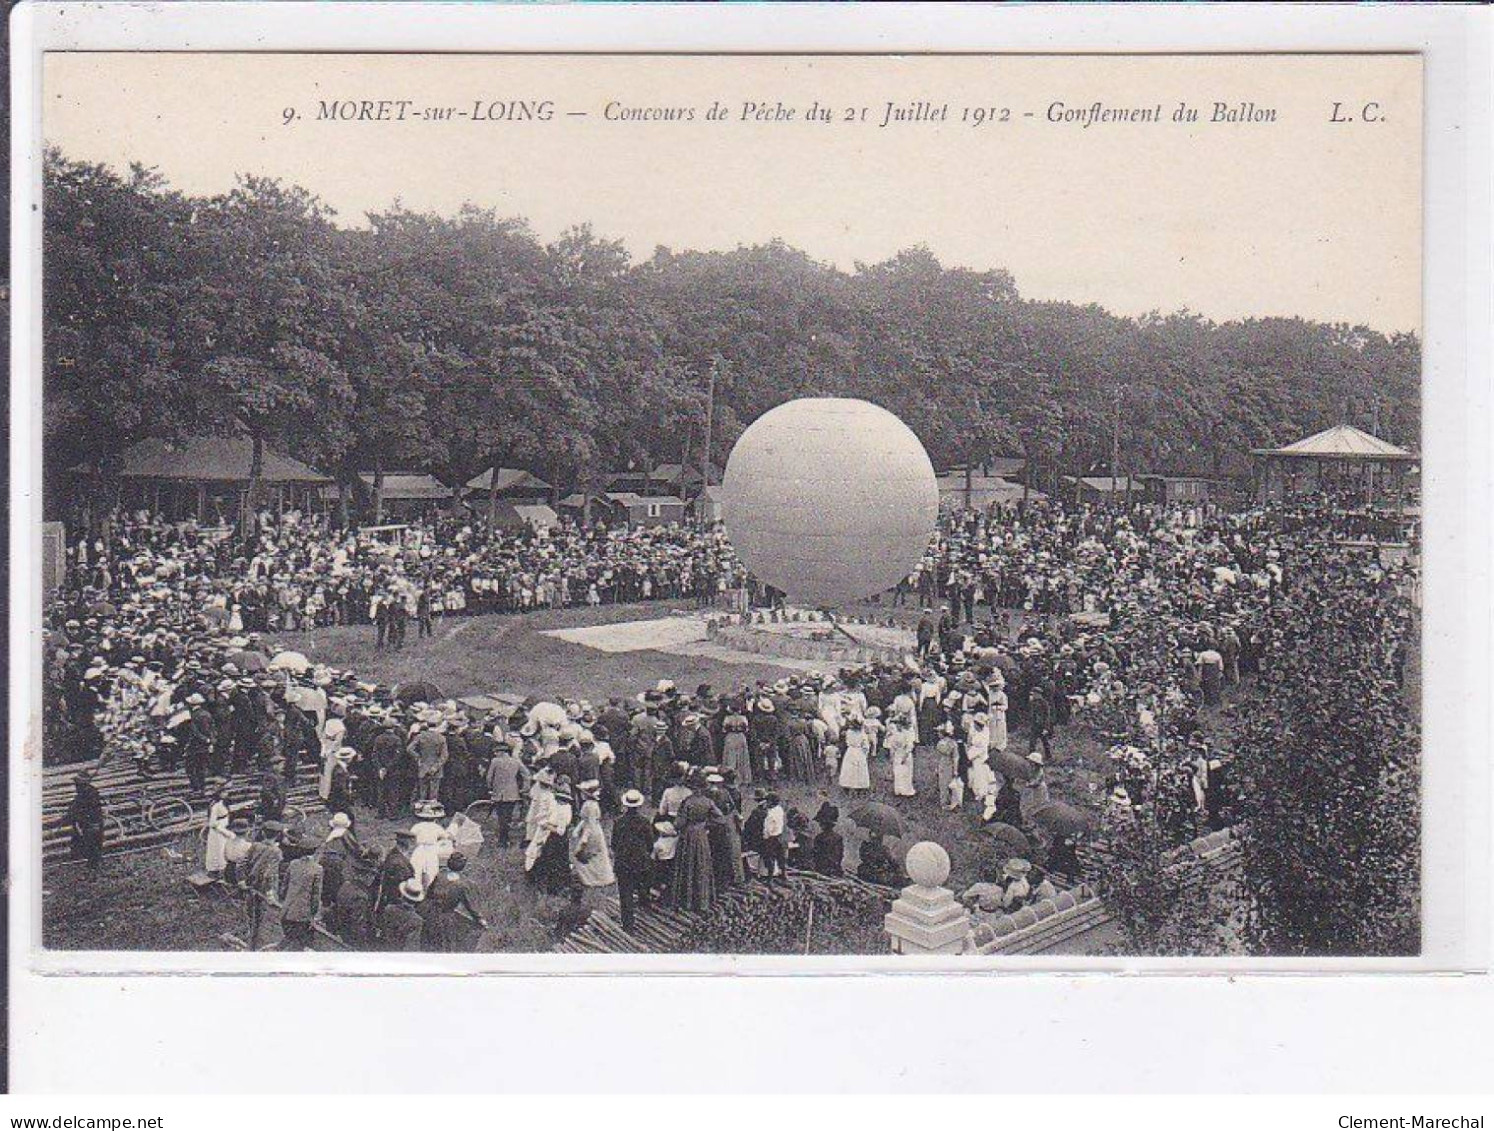 MORET-sur-LOING: Concours De Pêche Du 21 Juillet 1912, Gonflement Du Ballon - Très Bon état - Moret Sur Loing